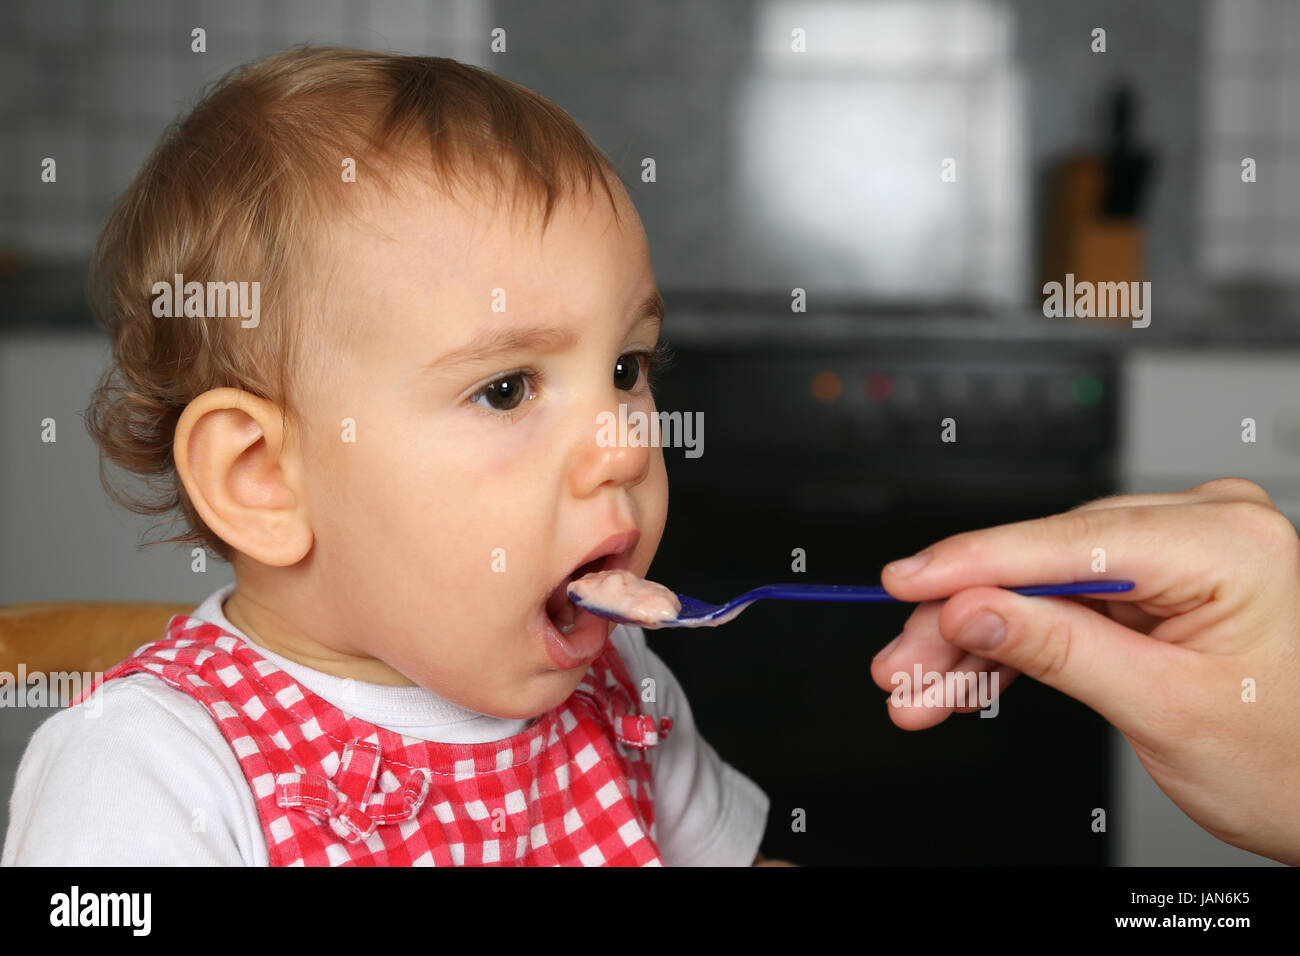 Mutter gibt kleinem Baby was zu essen, Baby öffnet den Mund Stock Photo